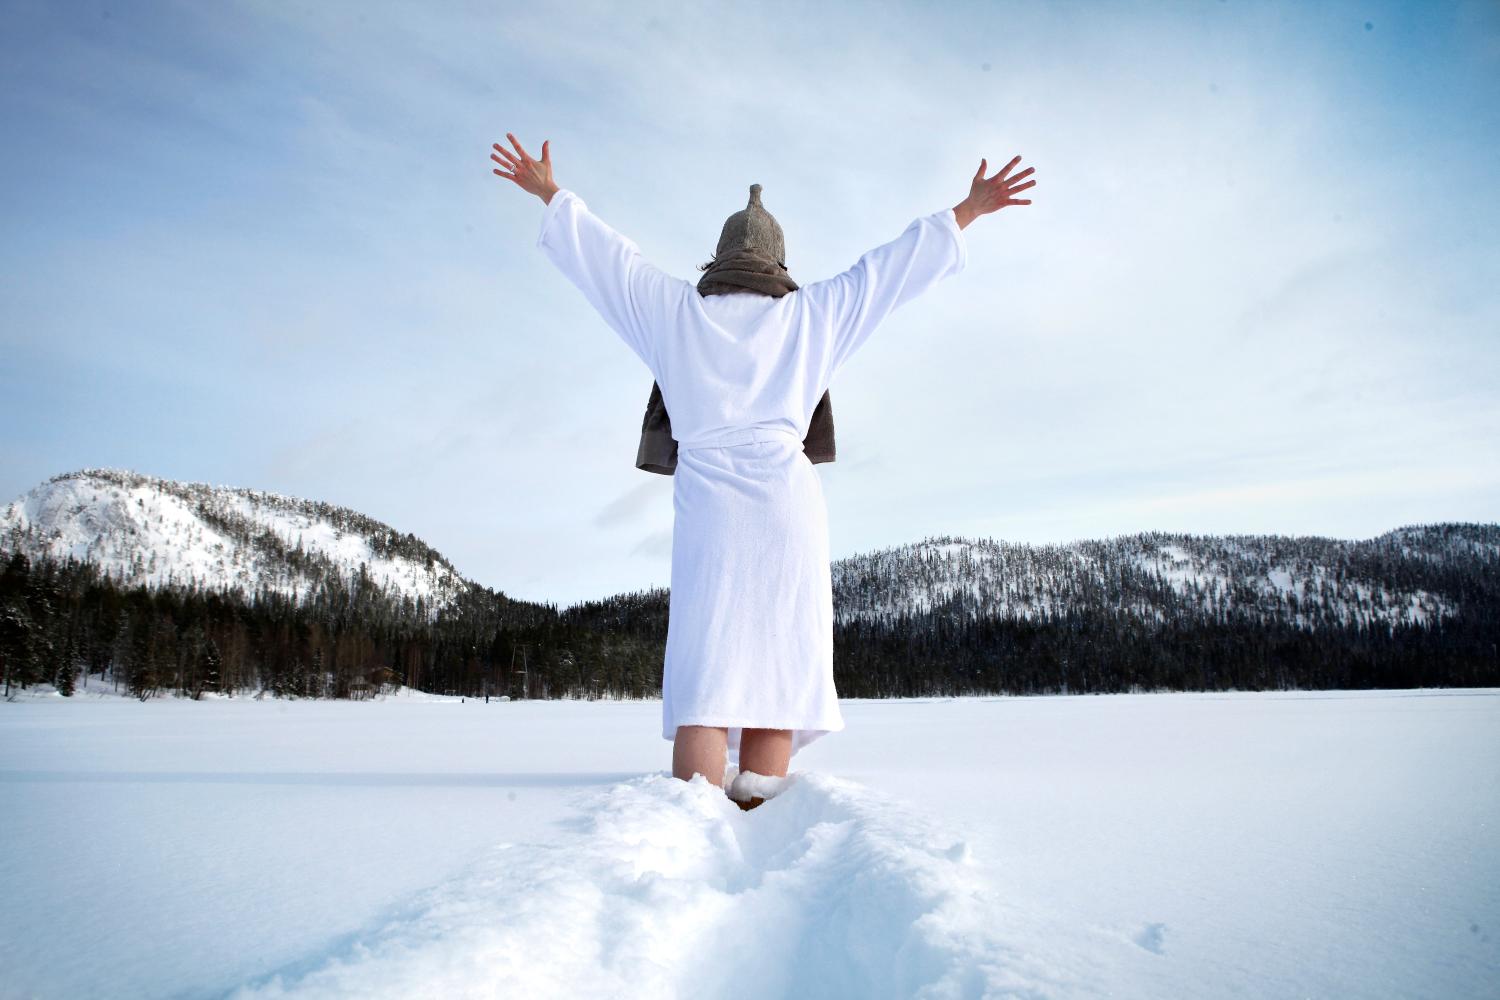 Henkilö seisoo lumihangessa kylpytakki ja saunahattu päällään, kädet ylhäällä ja selkä kameraan päin.